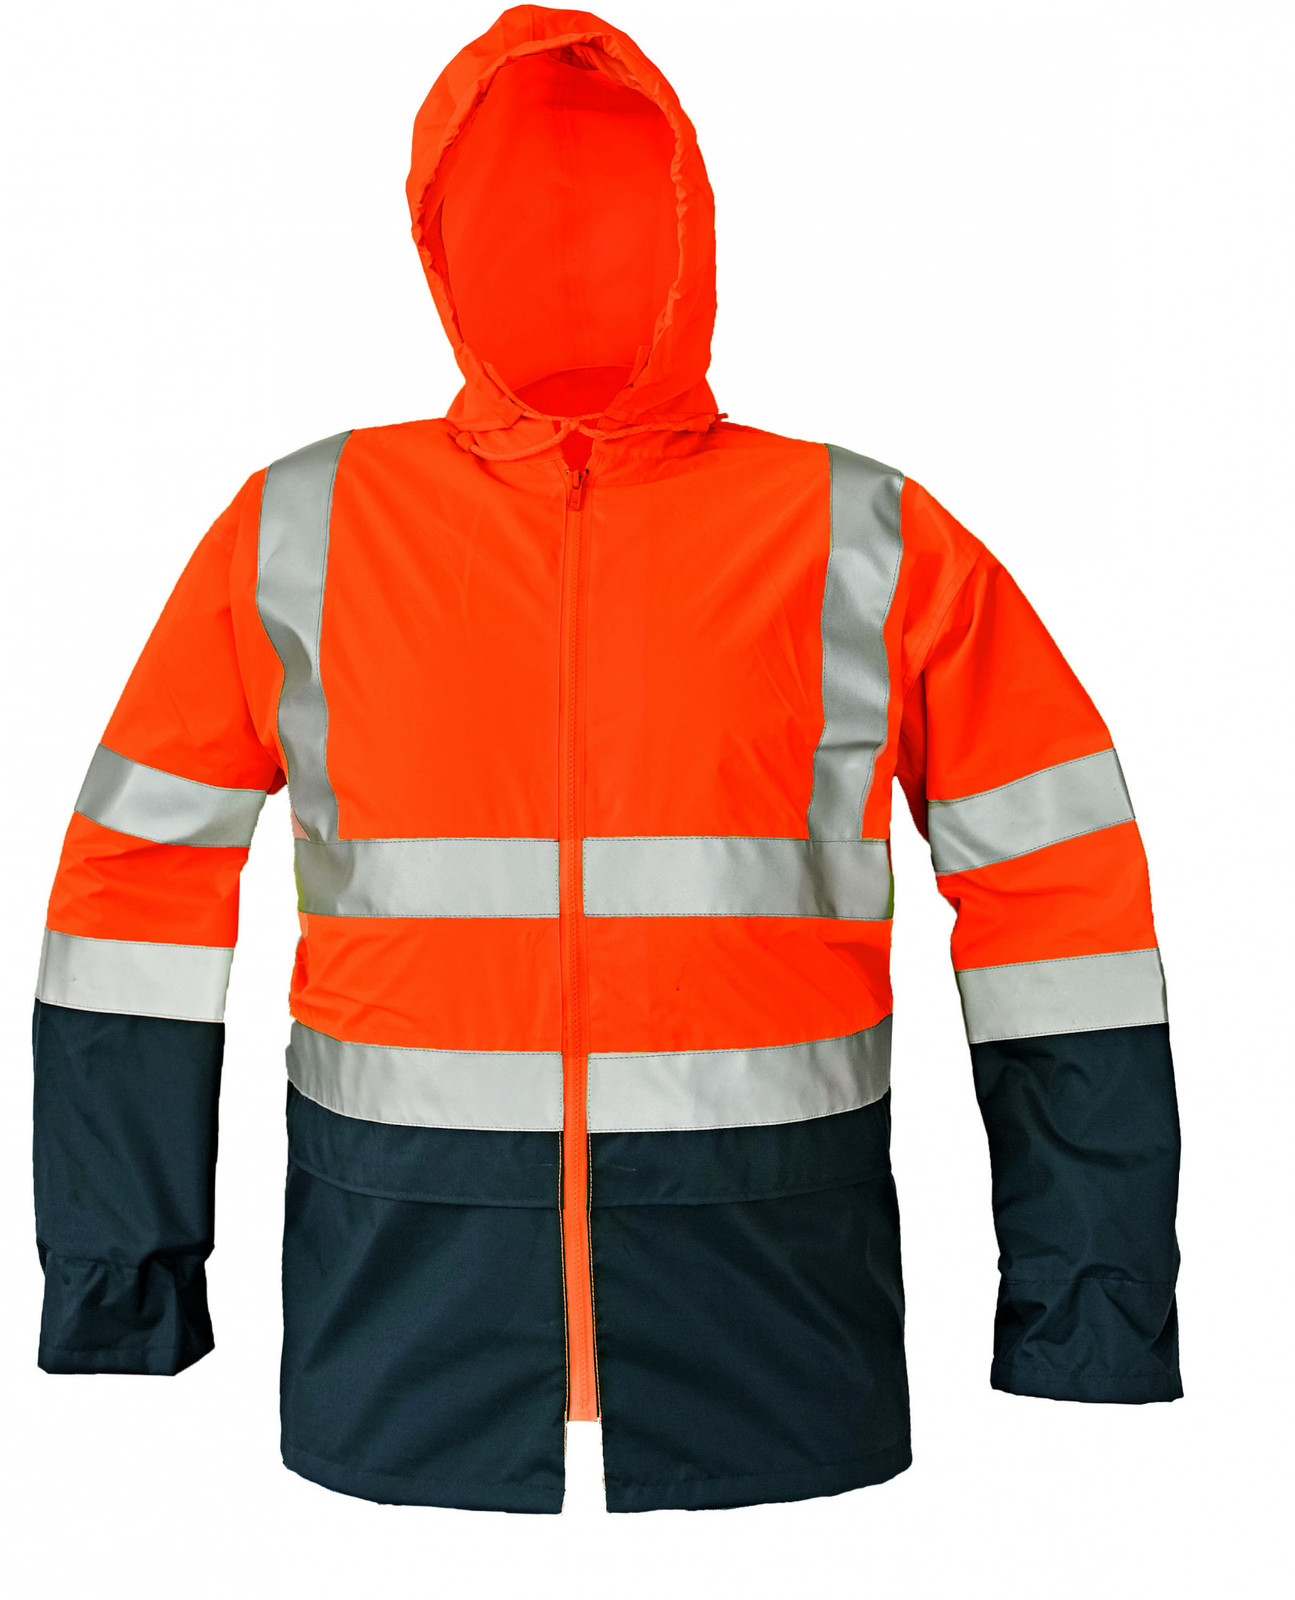 Reflexná pracovná bunda Epping - veľkosť: 3XL, farba: oranžová/navy